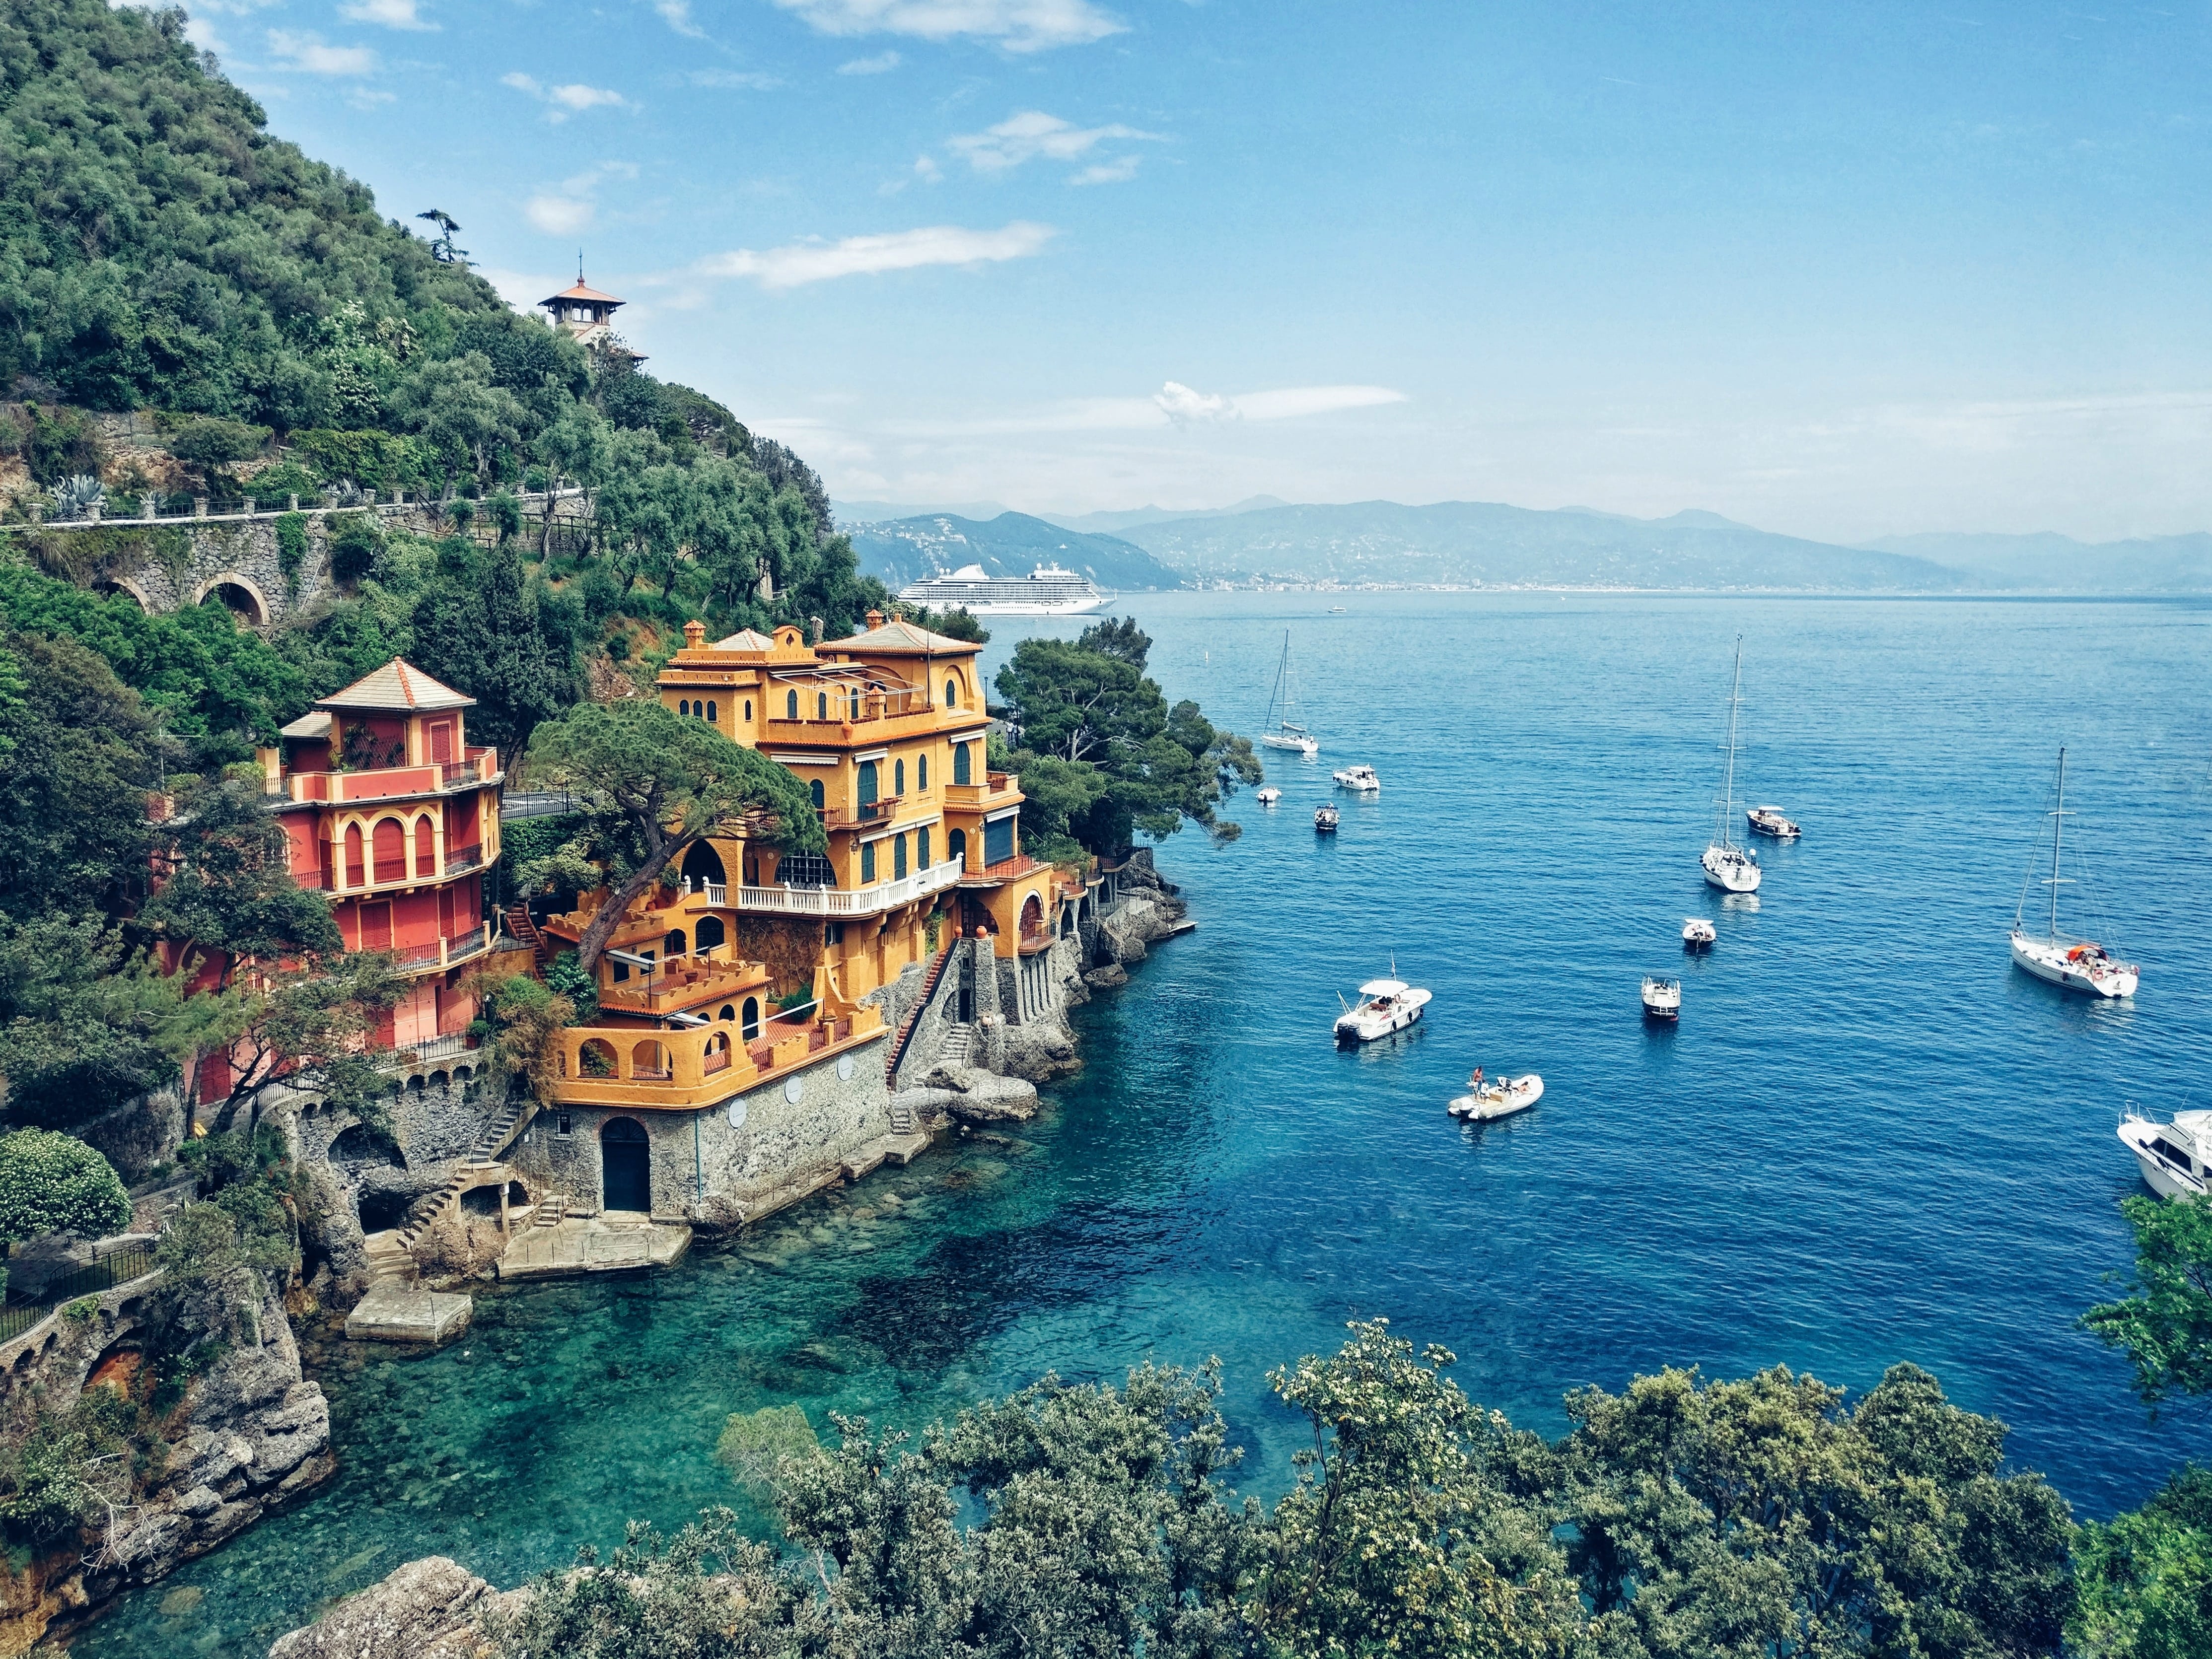 An Italian village on the sea